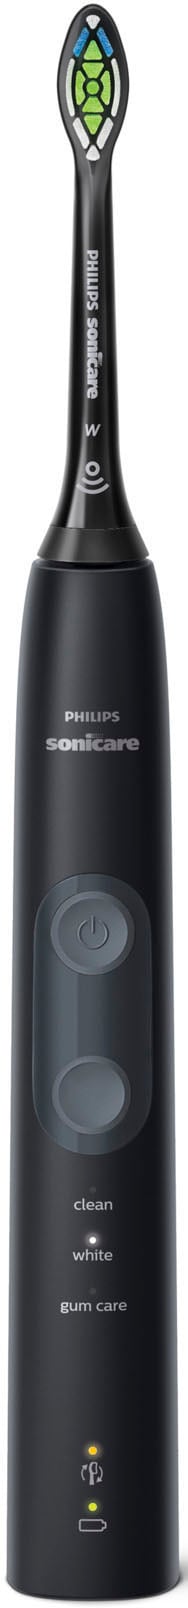 Philips Sonicare Elektrische Zahnbürste »ProtectiveClean 5100 HX6850/57«, 1 St. Aufsteckbürsten, Schallzahnbürste